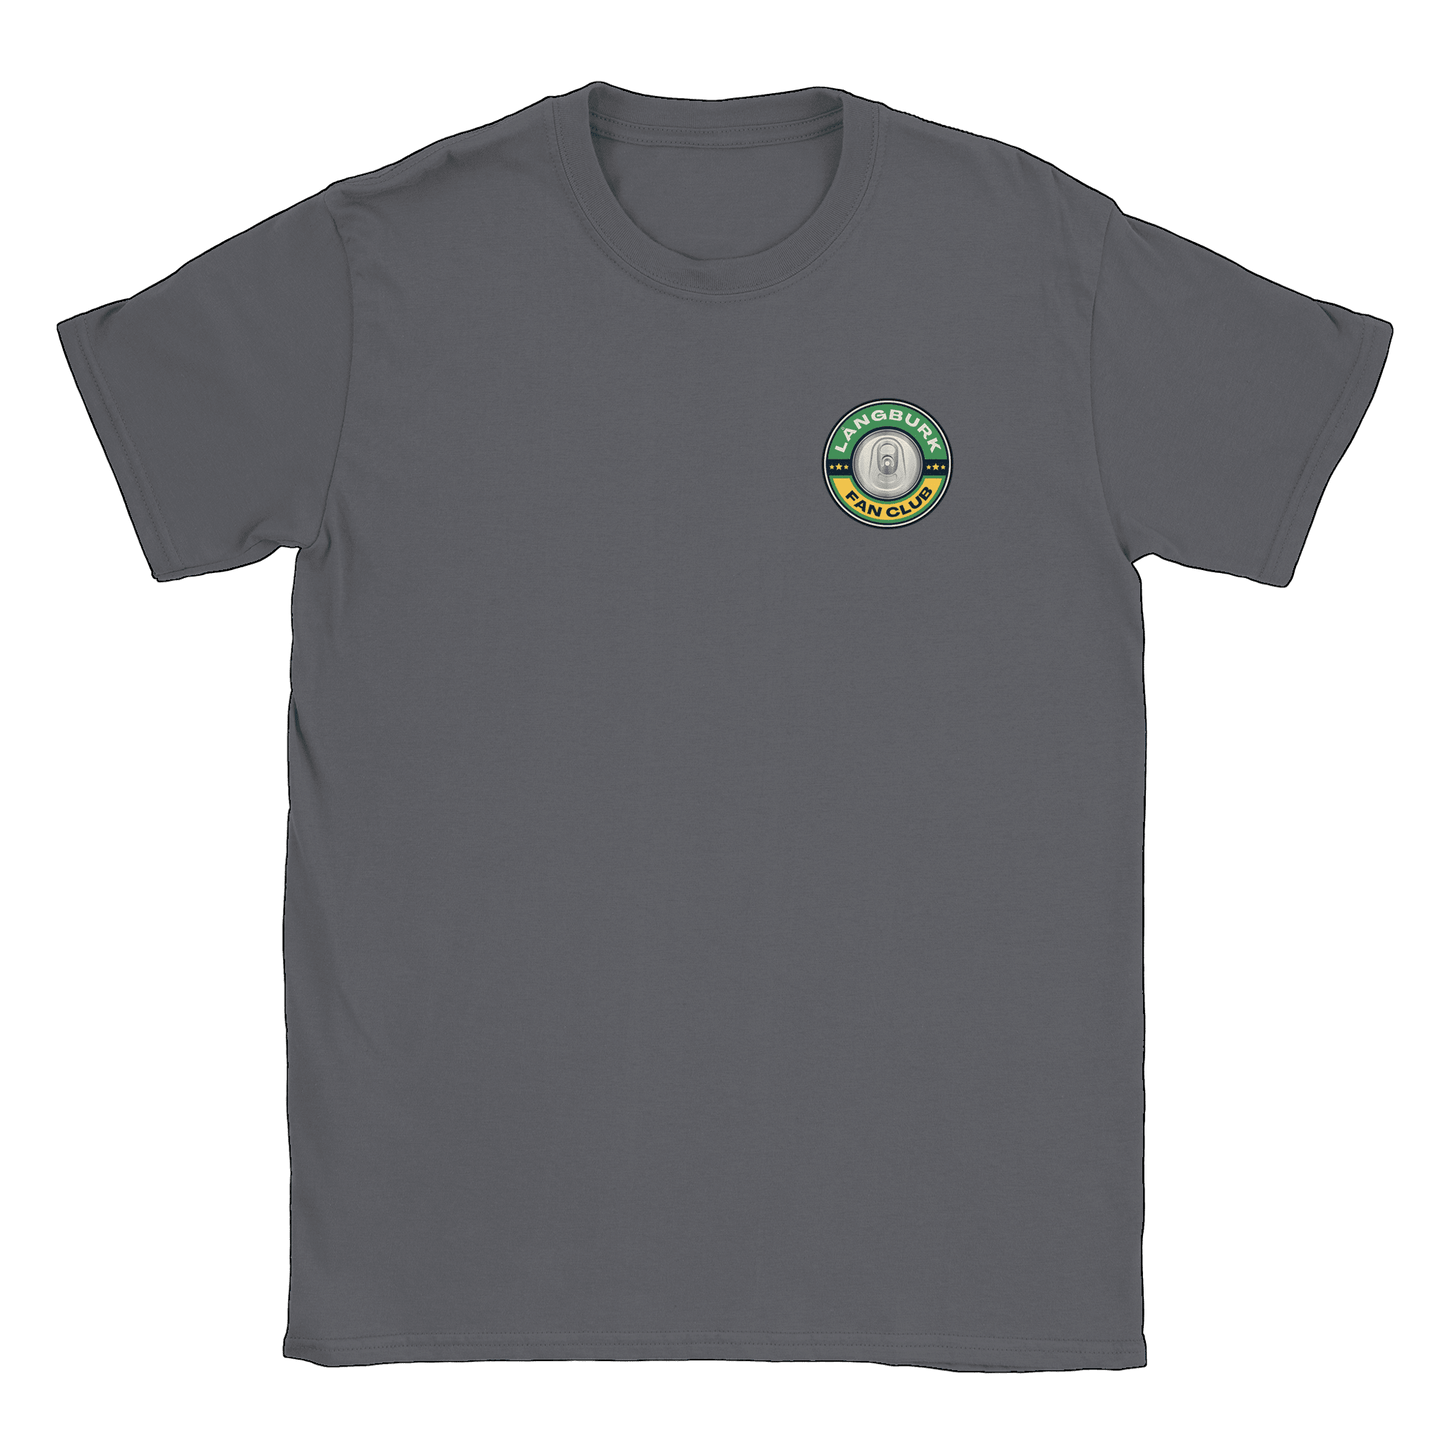 Långburk Fan Club liten - T-shirt Charcoal